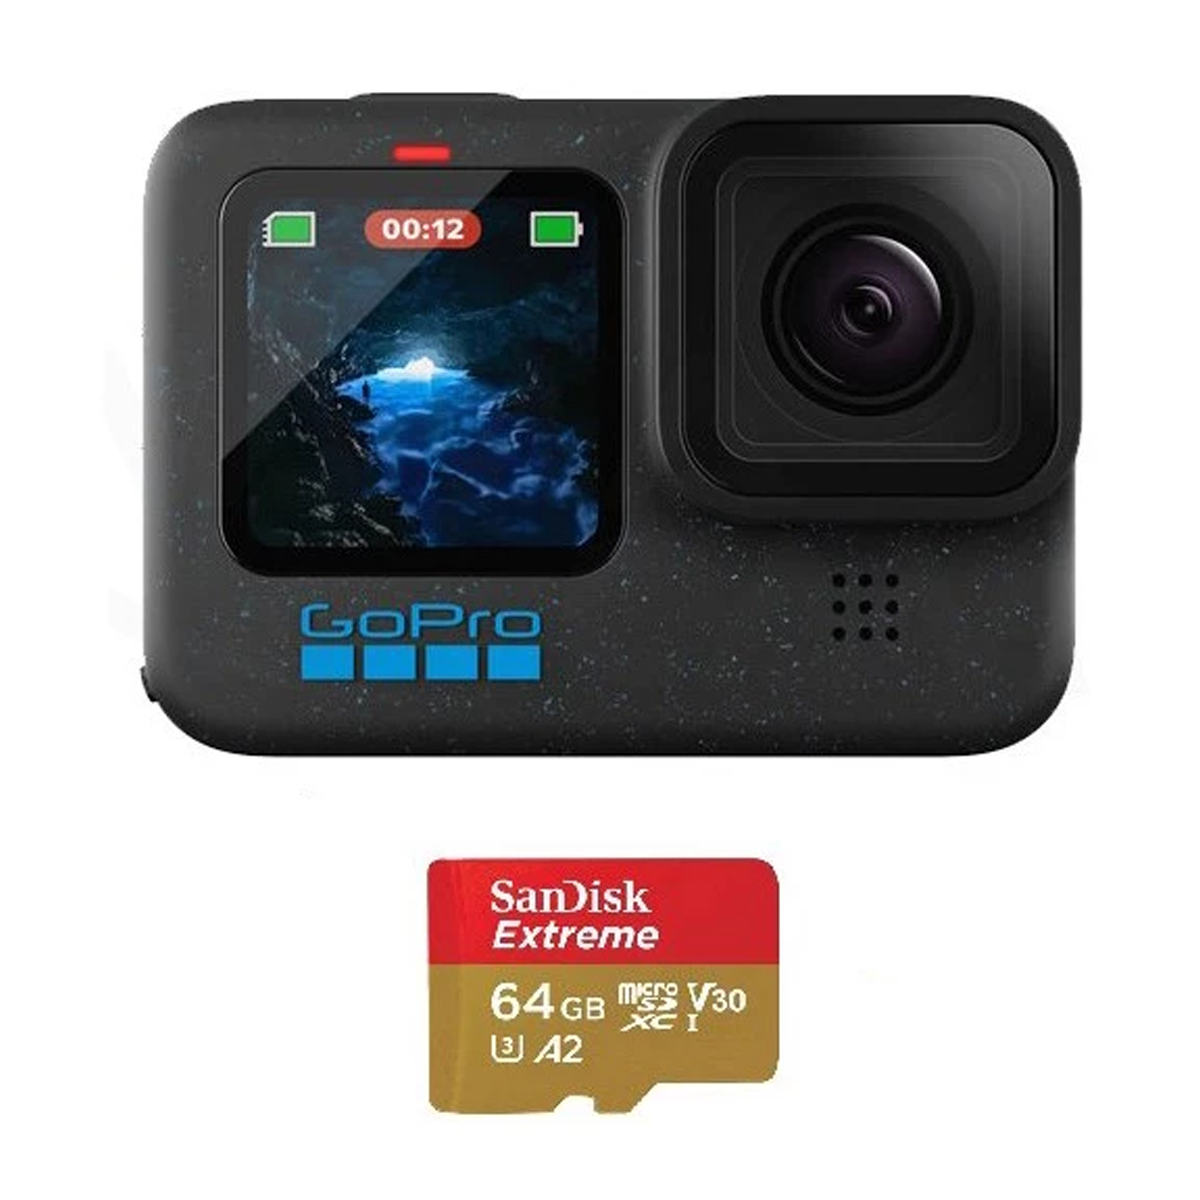 دوربین فیلم برداری گوپرو مدل Hero 12 به همراه کارت حافظه سن دیسک 64GB copy-small-image.png